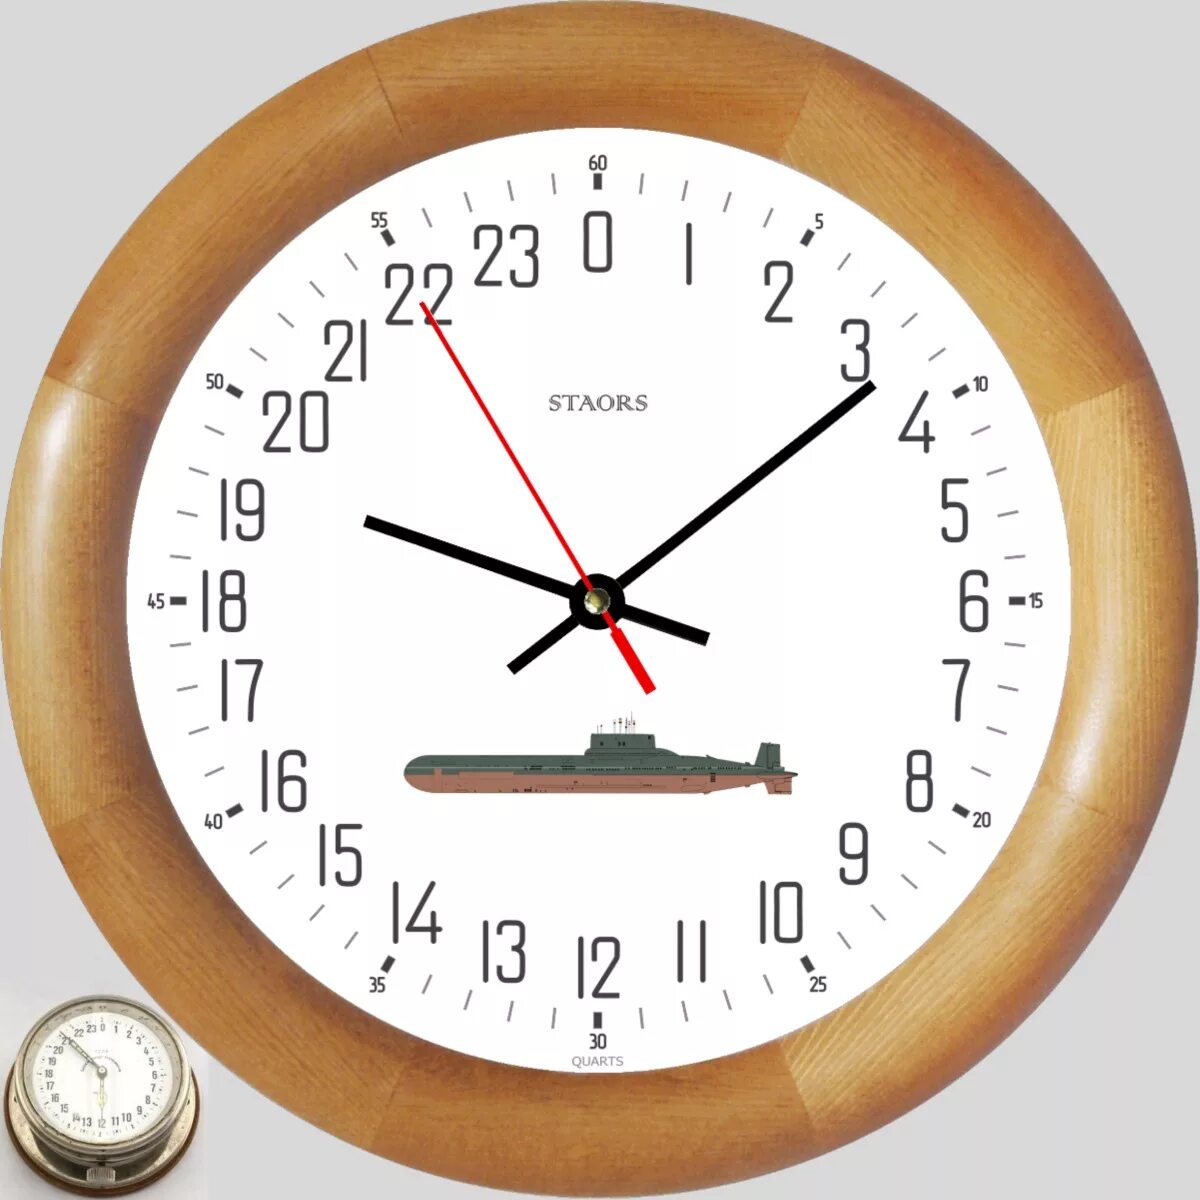 12 тыс часов. Часы корабельные, судовые с 24-х часовым циферблатом. Судовые часы с циферблатом на 24 часа. Корабельные часы на 24 часа. Часы с 24-х часовым циферблатом.